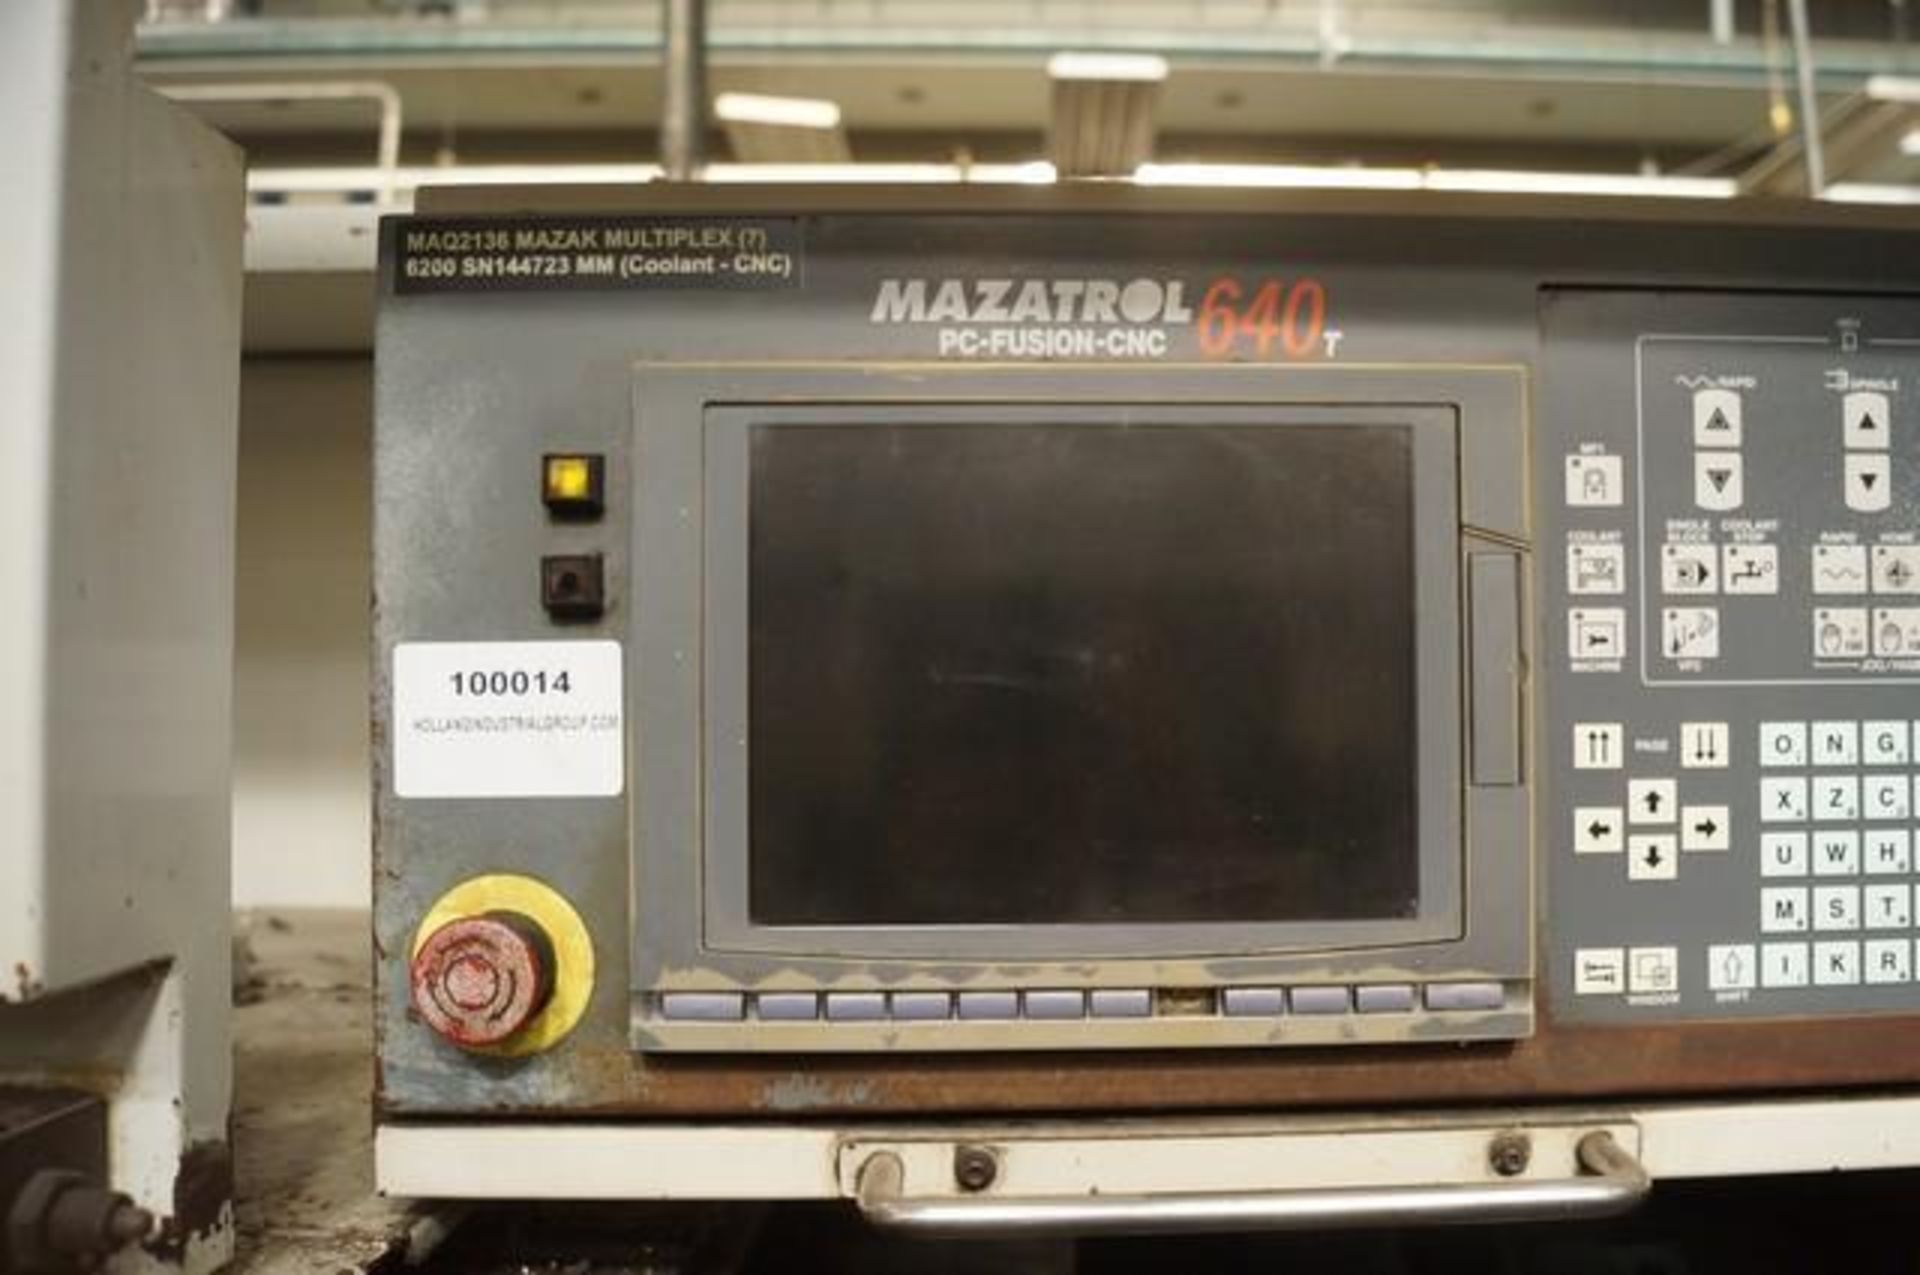 2001 MAZAK MULTIPLEX 6200 Horizontal Turning Center - Image 6 of 9